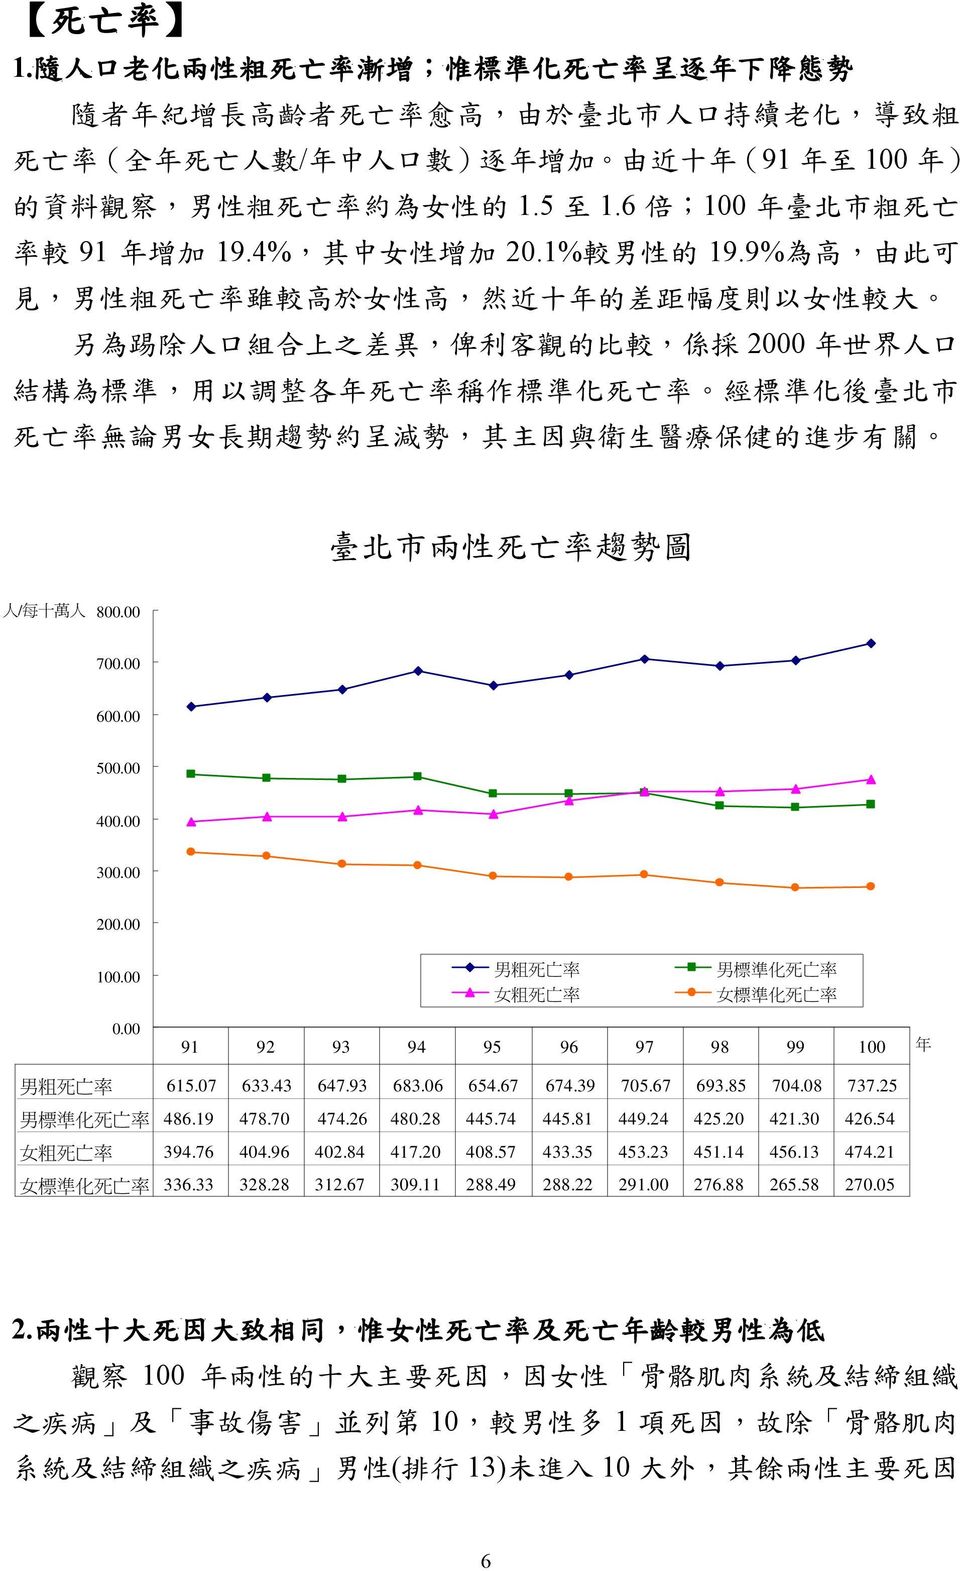 亡 率 約 為 女 性 的 1.5 至 1.6 倍 ;100 年 臺 北 市 粗 死 亡 率 較 91 年 增 加 19.4%, 其 中 女 性 增 加 20.1% 較 男 性 的 19.